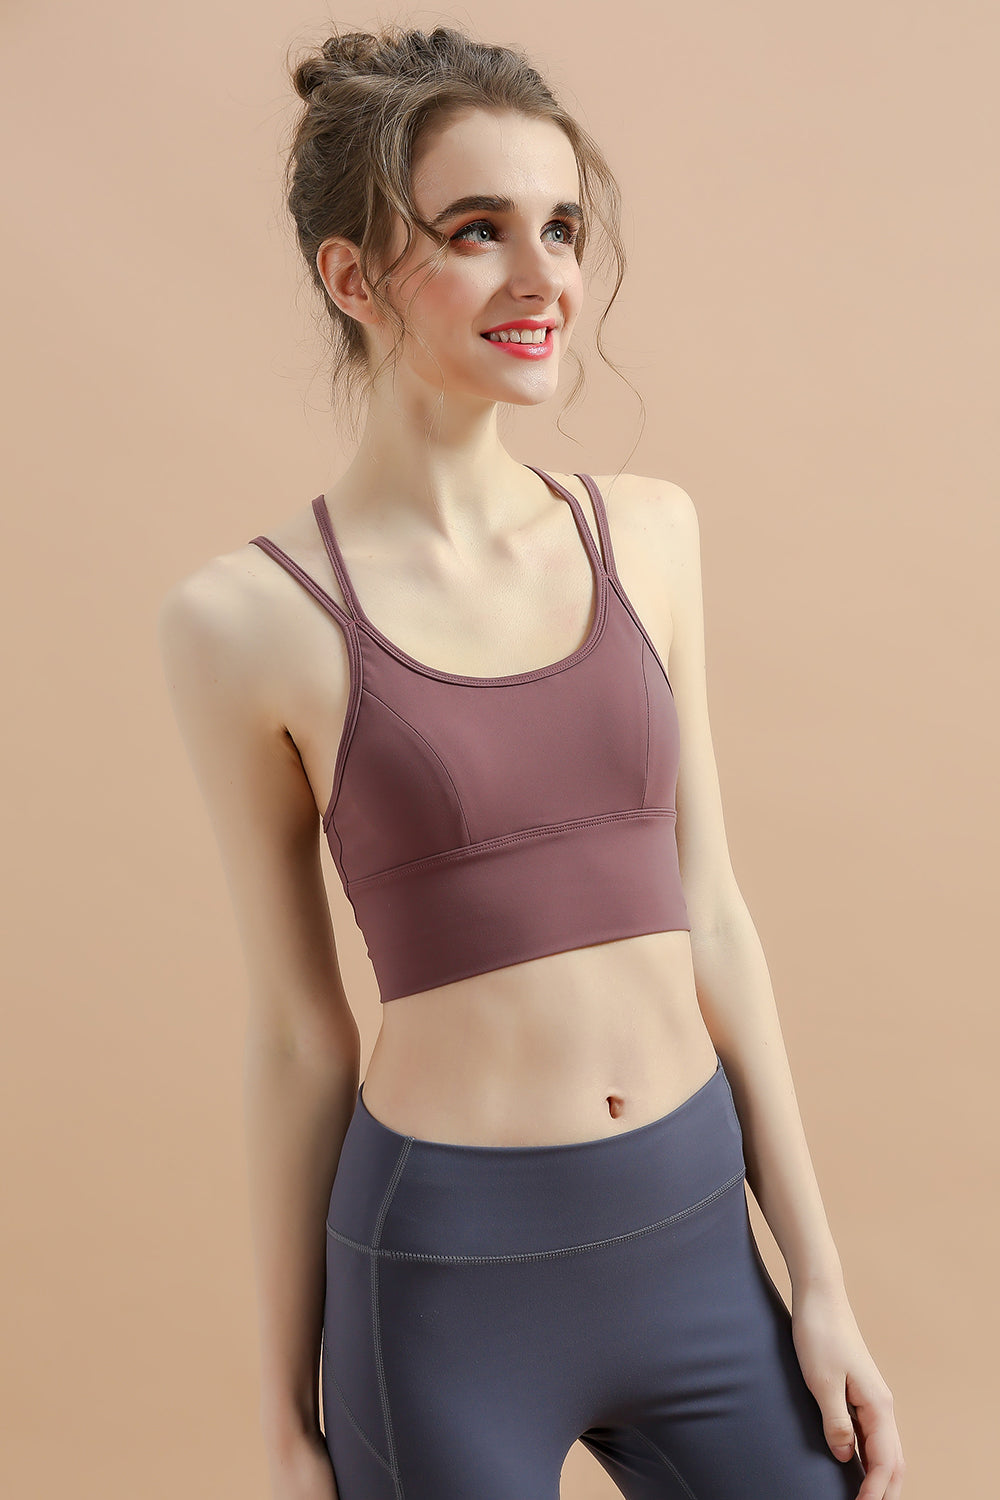 新品运动文胸女 美背健身瑜伽文胸 交叉系带跑步运动内衣2040